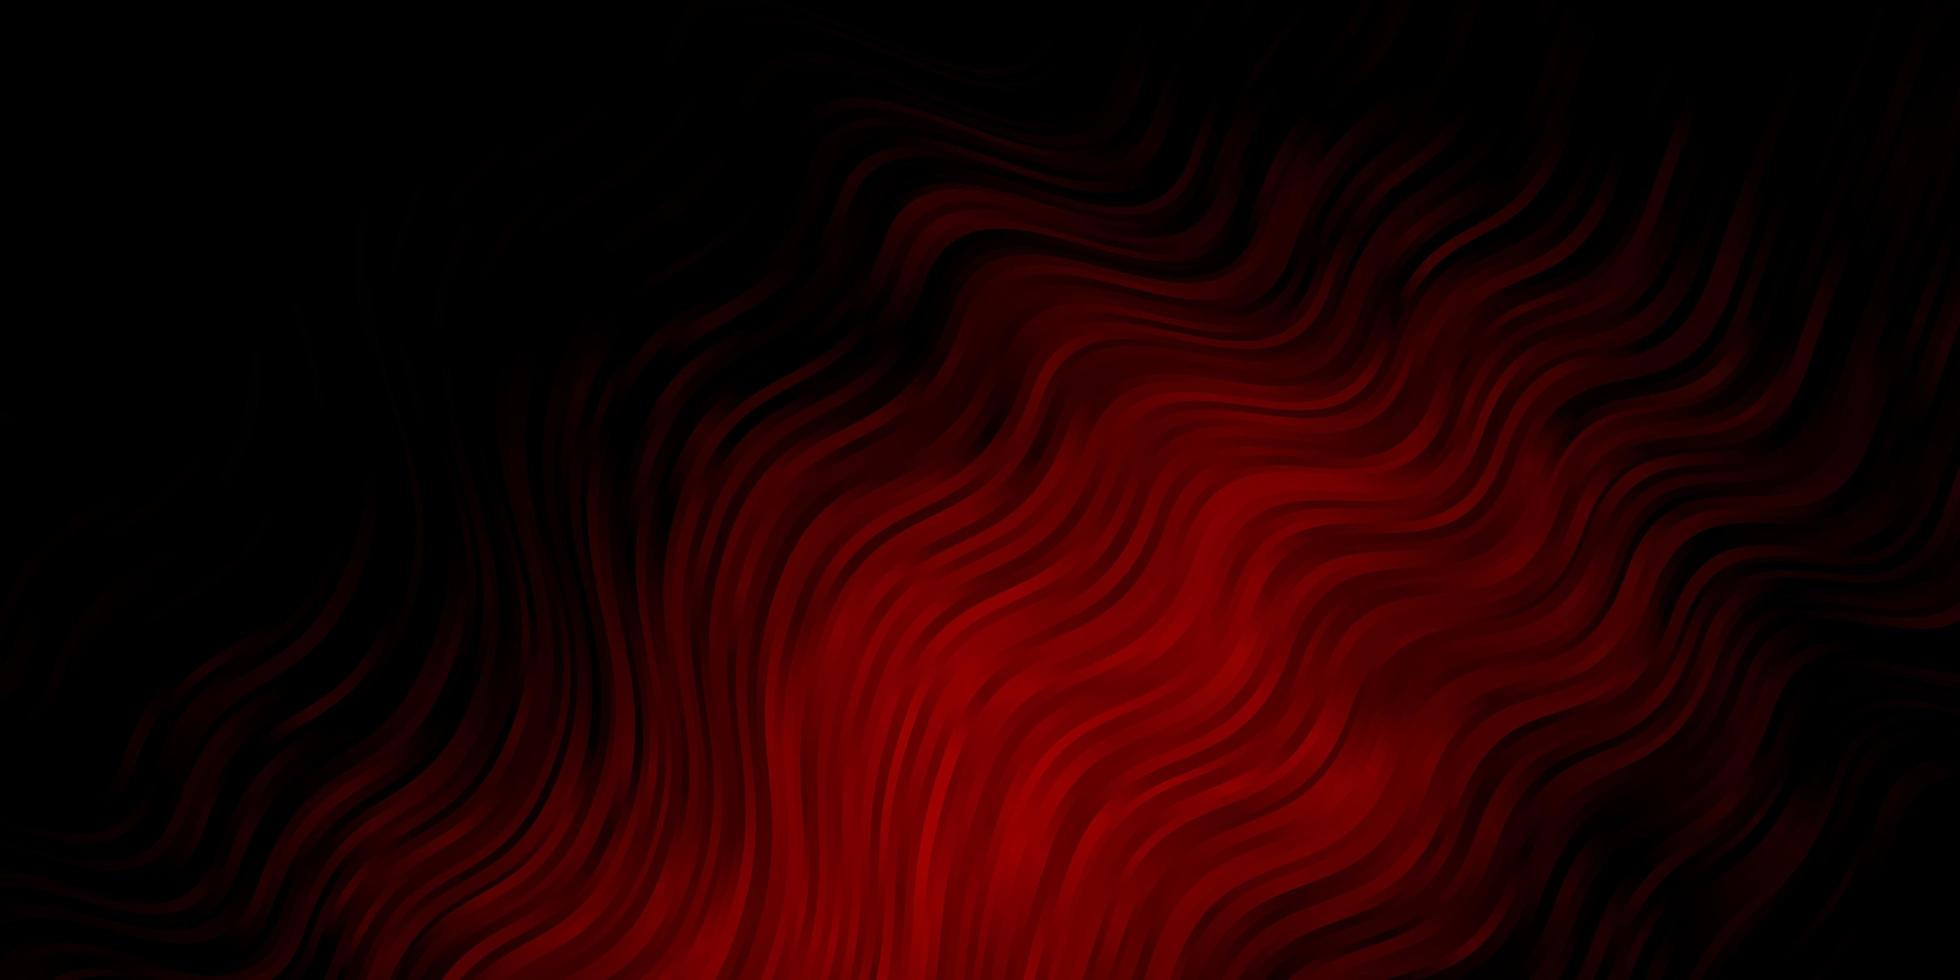 Fondo de vector rojo oscuro con líneas curvas ilustración colorida que consta de curvas de diseño inteligente para sus promociones